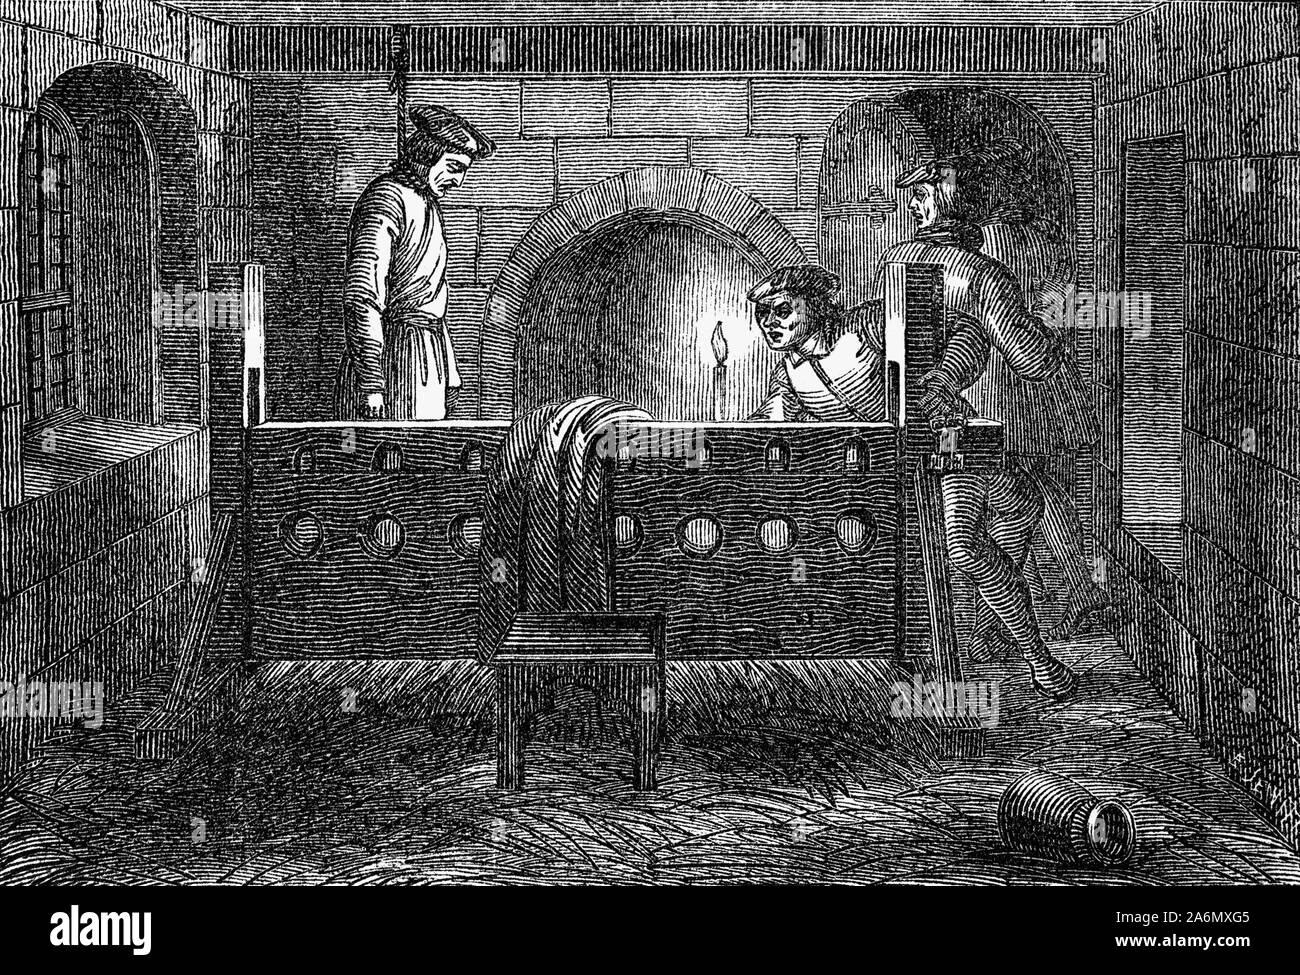 Richard Hunne war ein englischer Kaufmann Schneider in der Stadt London in den frühen Jahren der Herrschaft von Heinrich VIII. Nach einem Streit mit seinem Priester über seinen kleinen Sohn's Funeral, Hunne gesucht das Englische common law Gerichte zu verwenden, die Autorität der Kirche in Frage zu stellen. In der Antwort, Kirche Beamte ihn für Versuch in einem kirchlichen Gericht auf die Eigenkapitalunterlegung der Ketzerei festgenommen. Im Dezember 1514, während der Prozess wartet, Hunne wurde tot in seiner Zelle gefunden, und Mord durch kirchliche Amtsträger vermutet wurde. Zu seinem Tod Wut gegen den Klerus, und Monate der politischen und religiösen turmoi Stockfoto